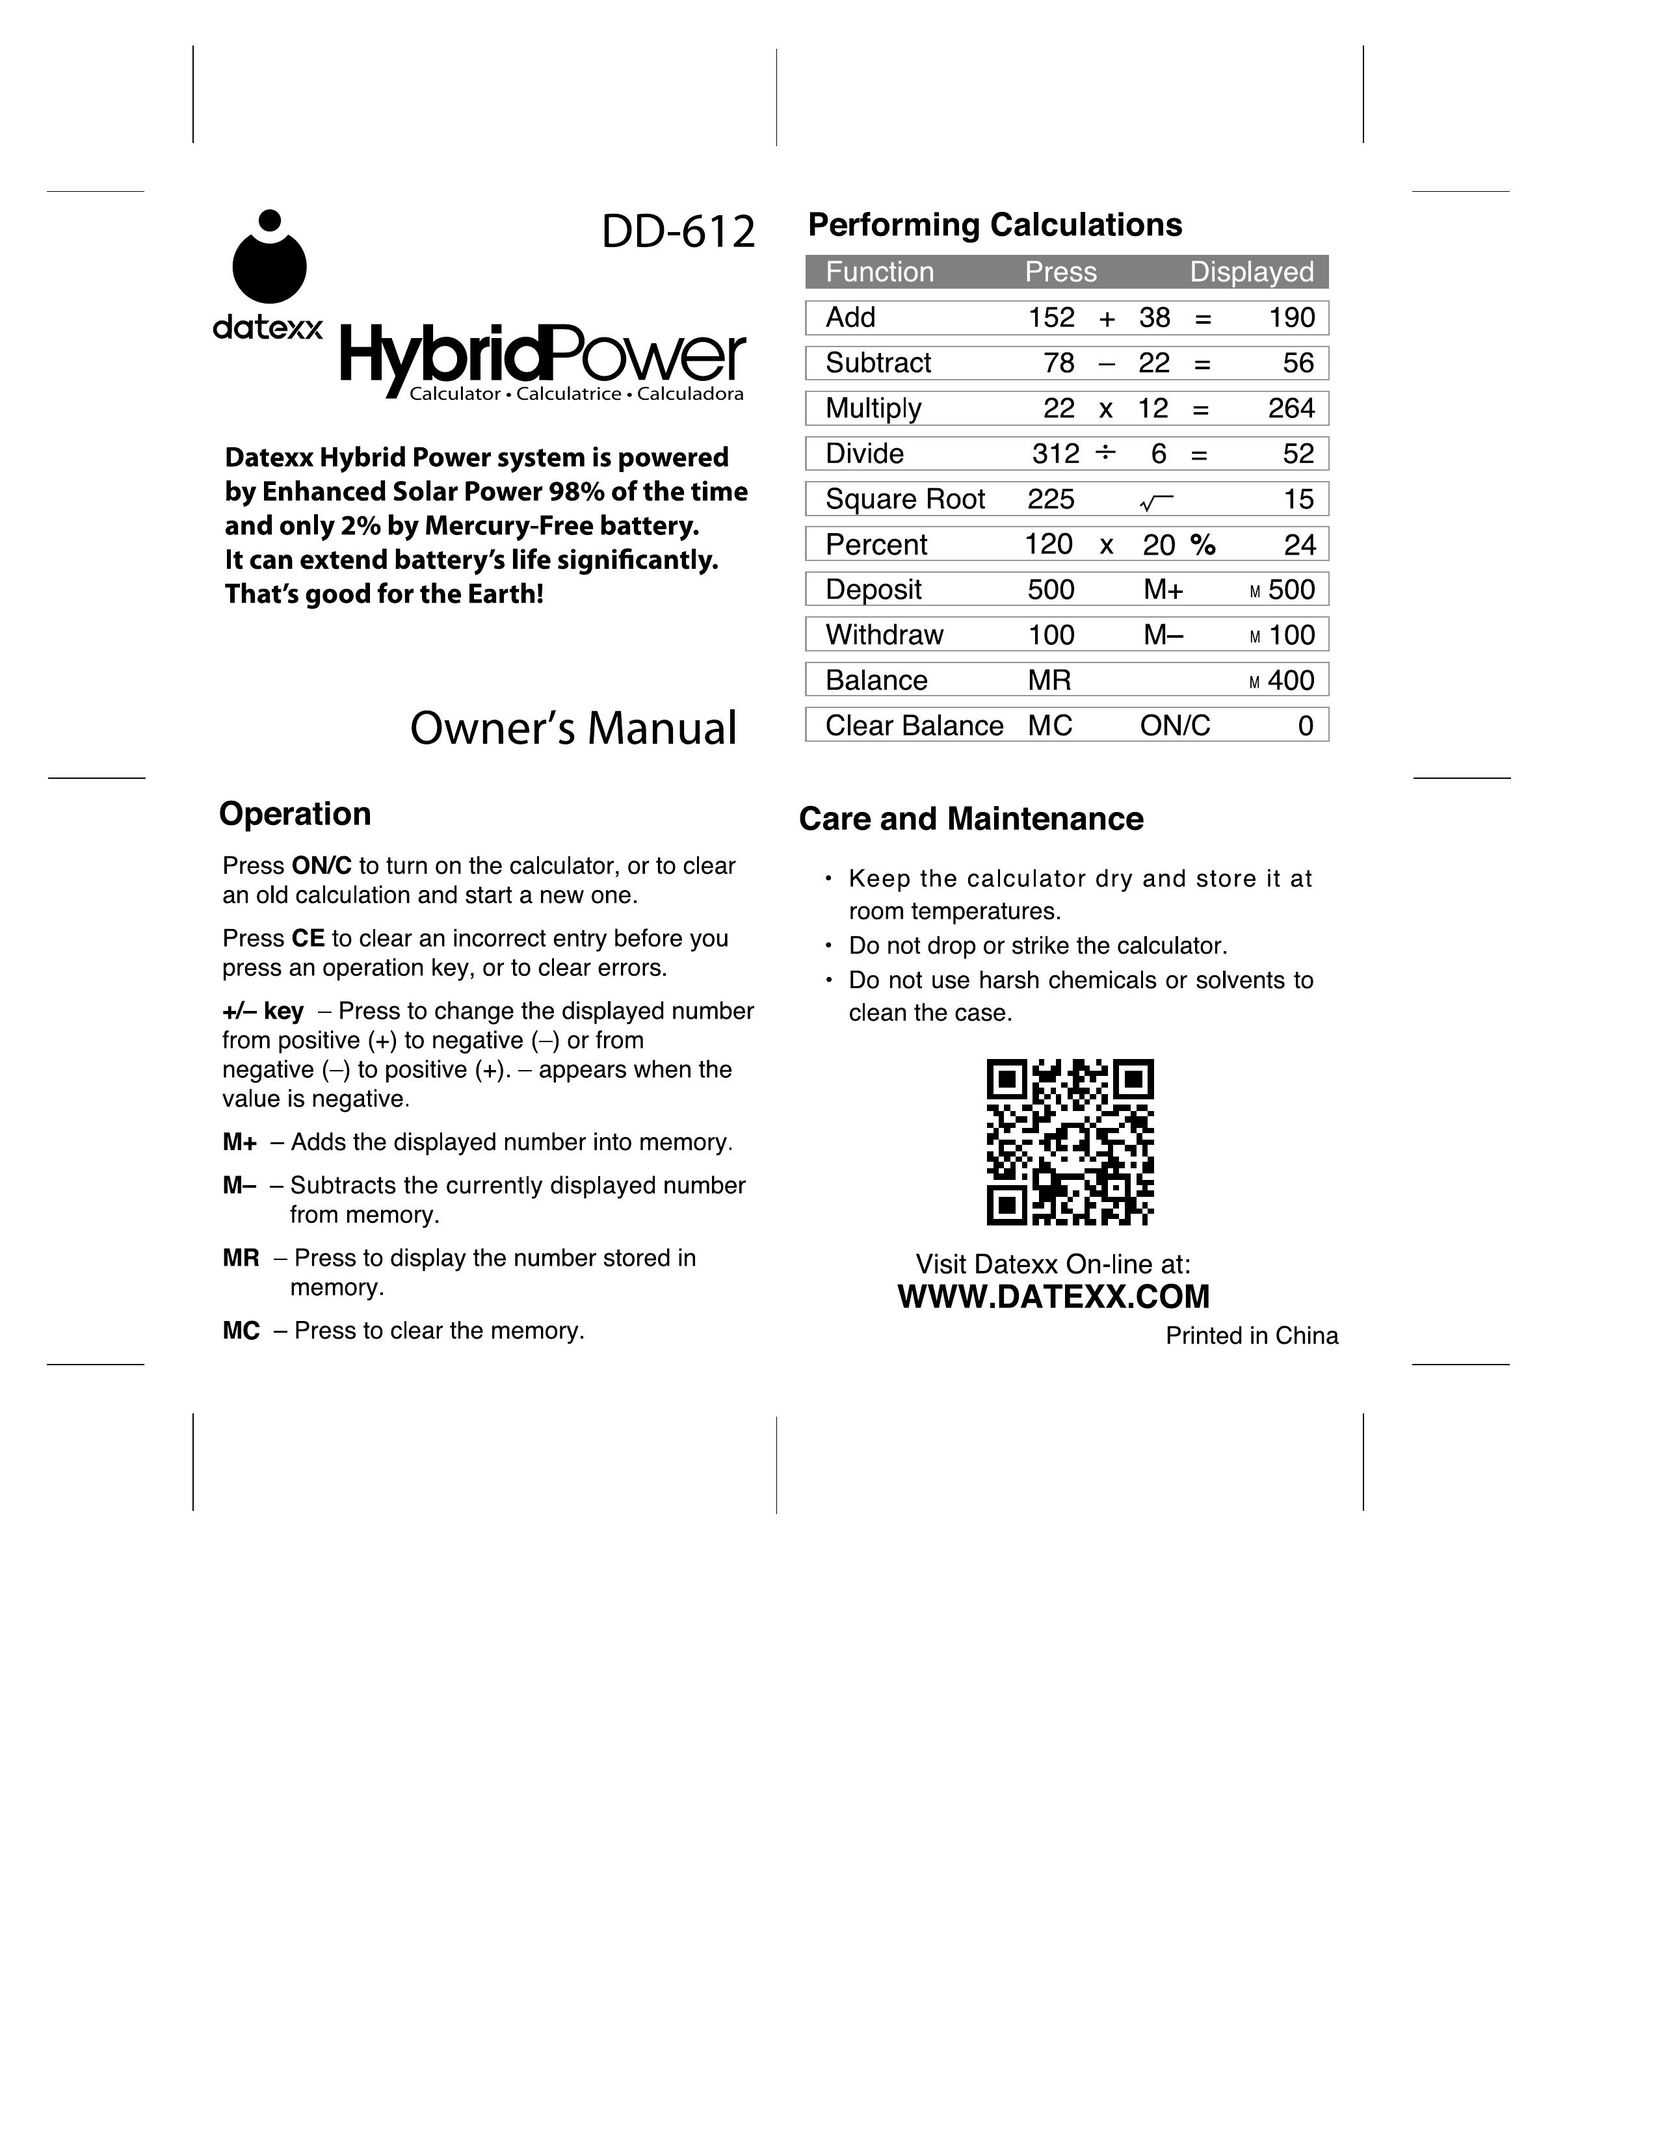 Datexx DD-612 Calculator User Manual